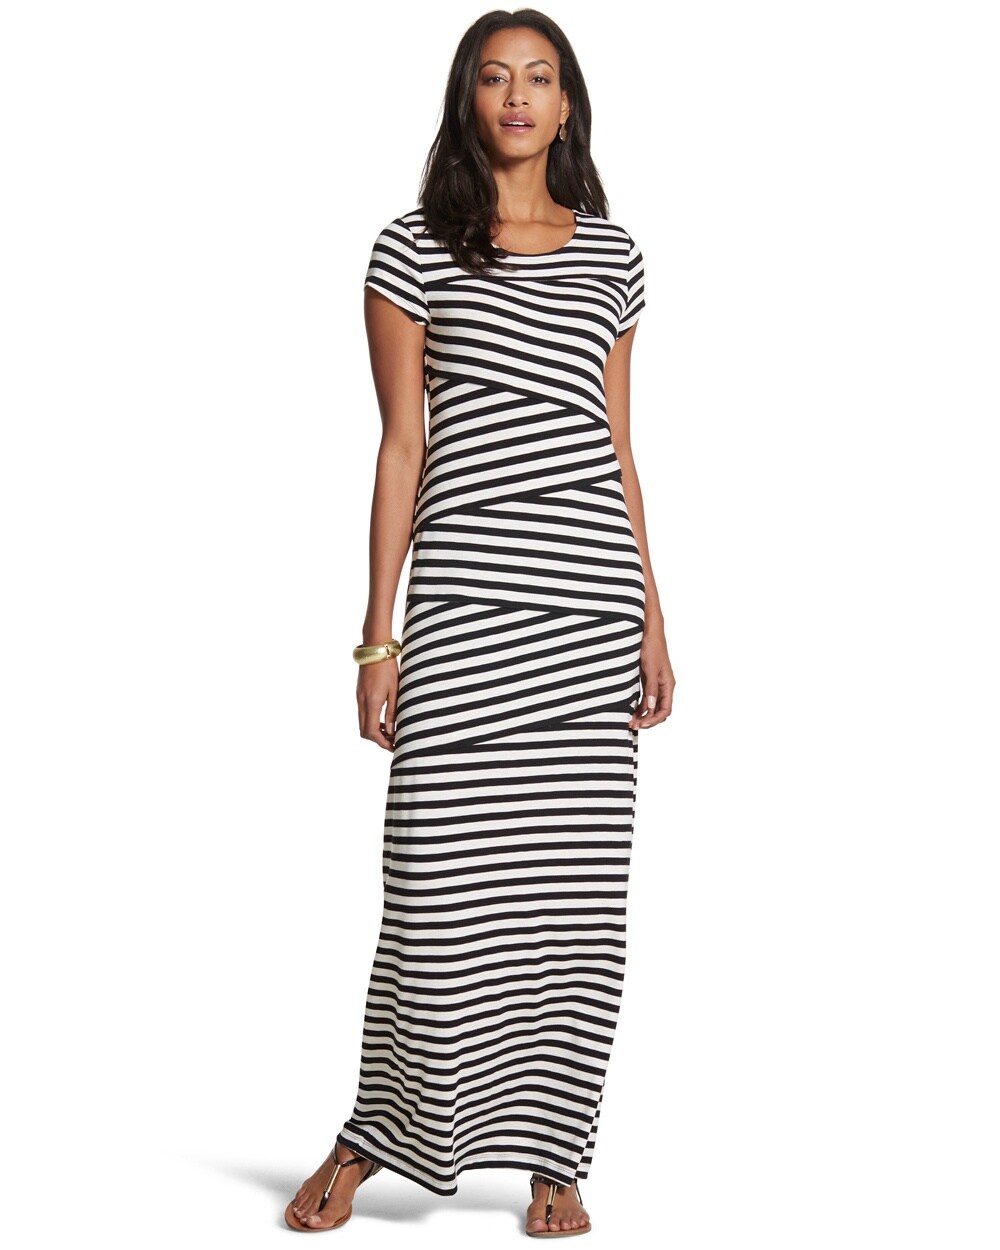 Tiered Striped Maxi Dress - Women's Dresses & Skirts - Midi & Maxi ...